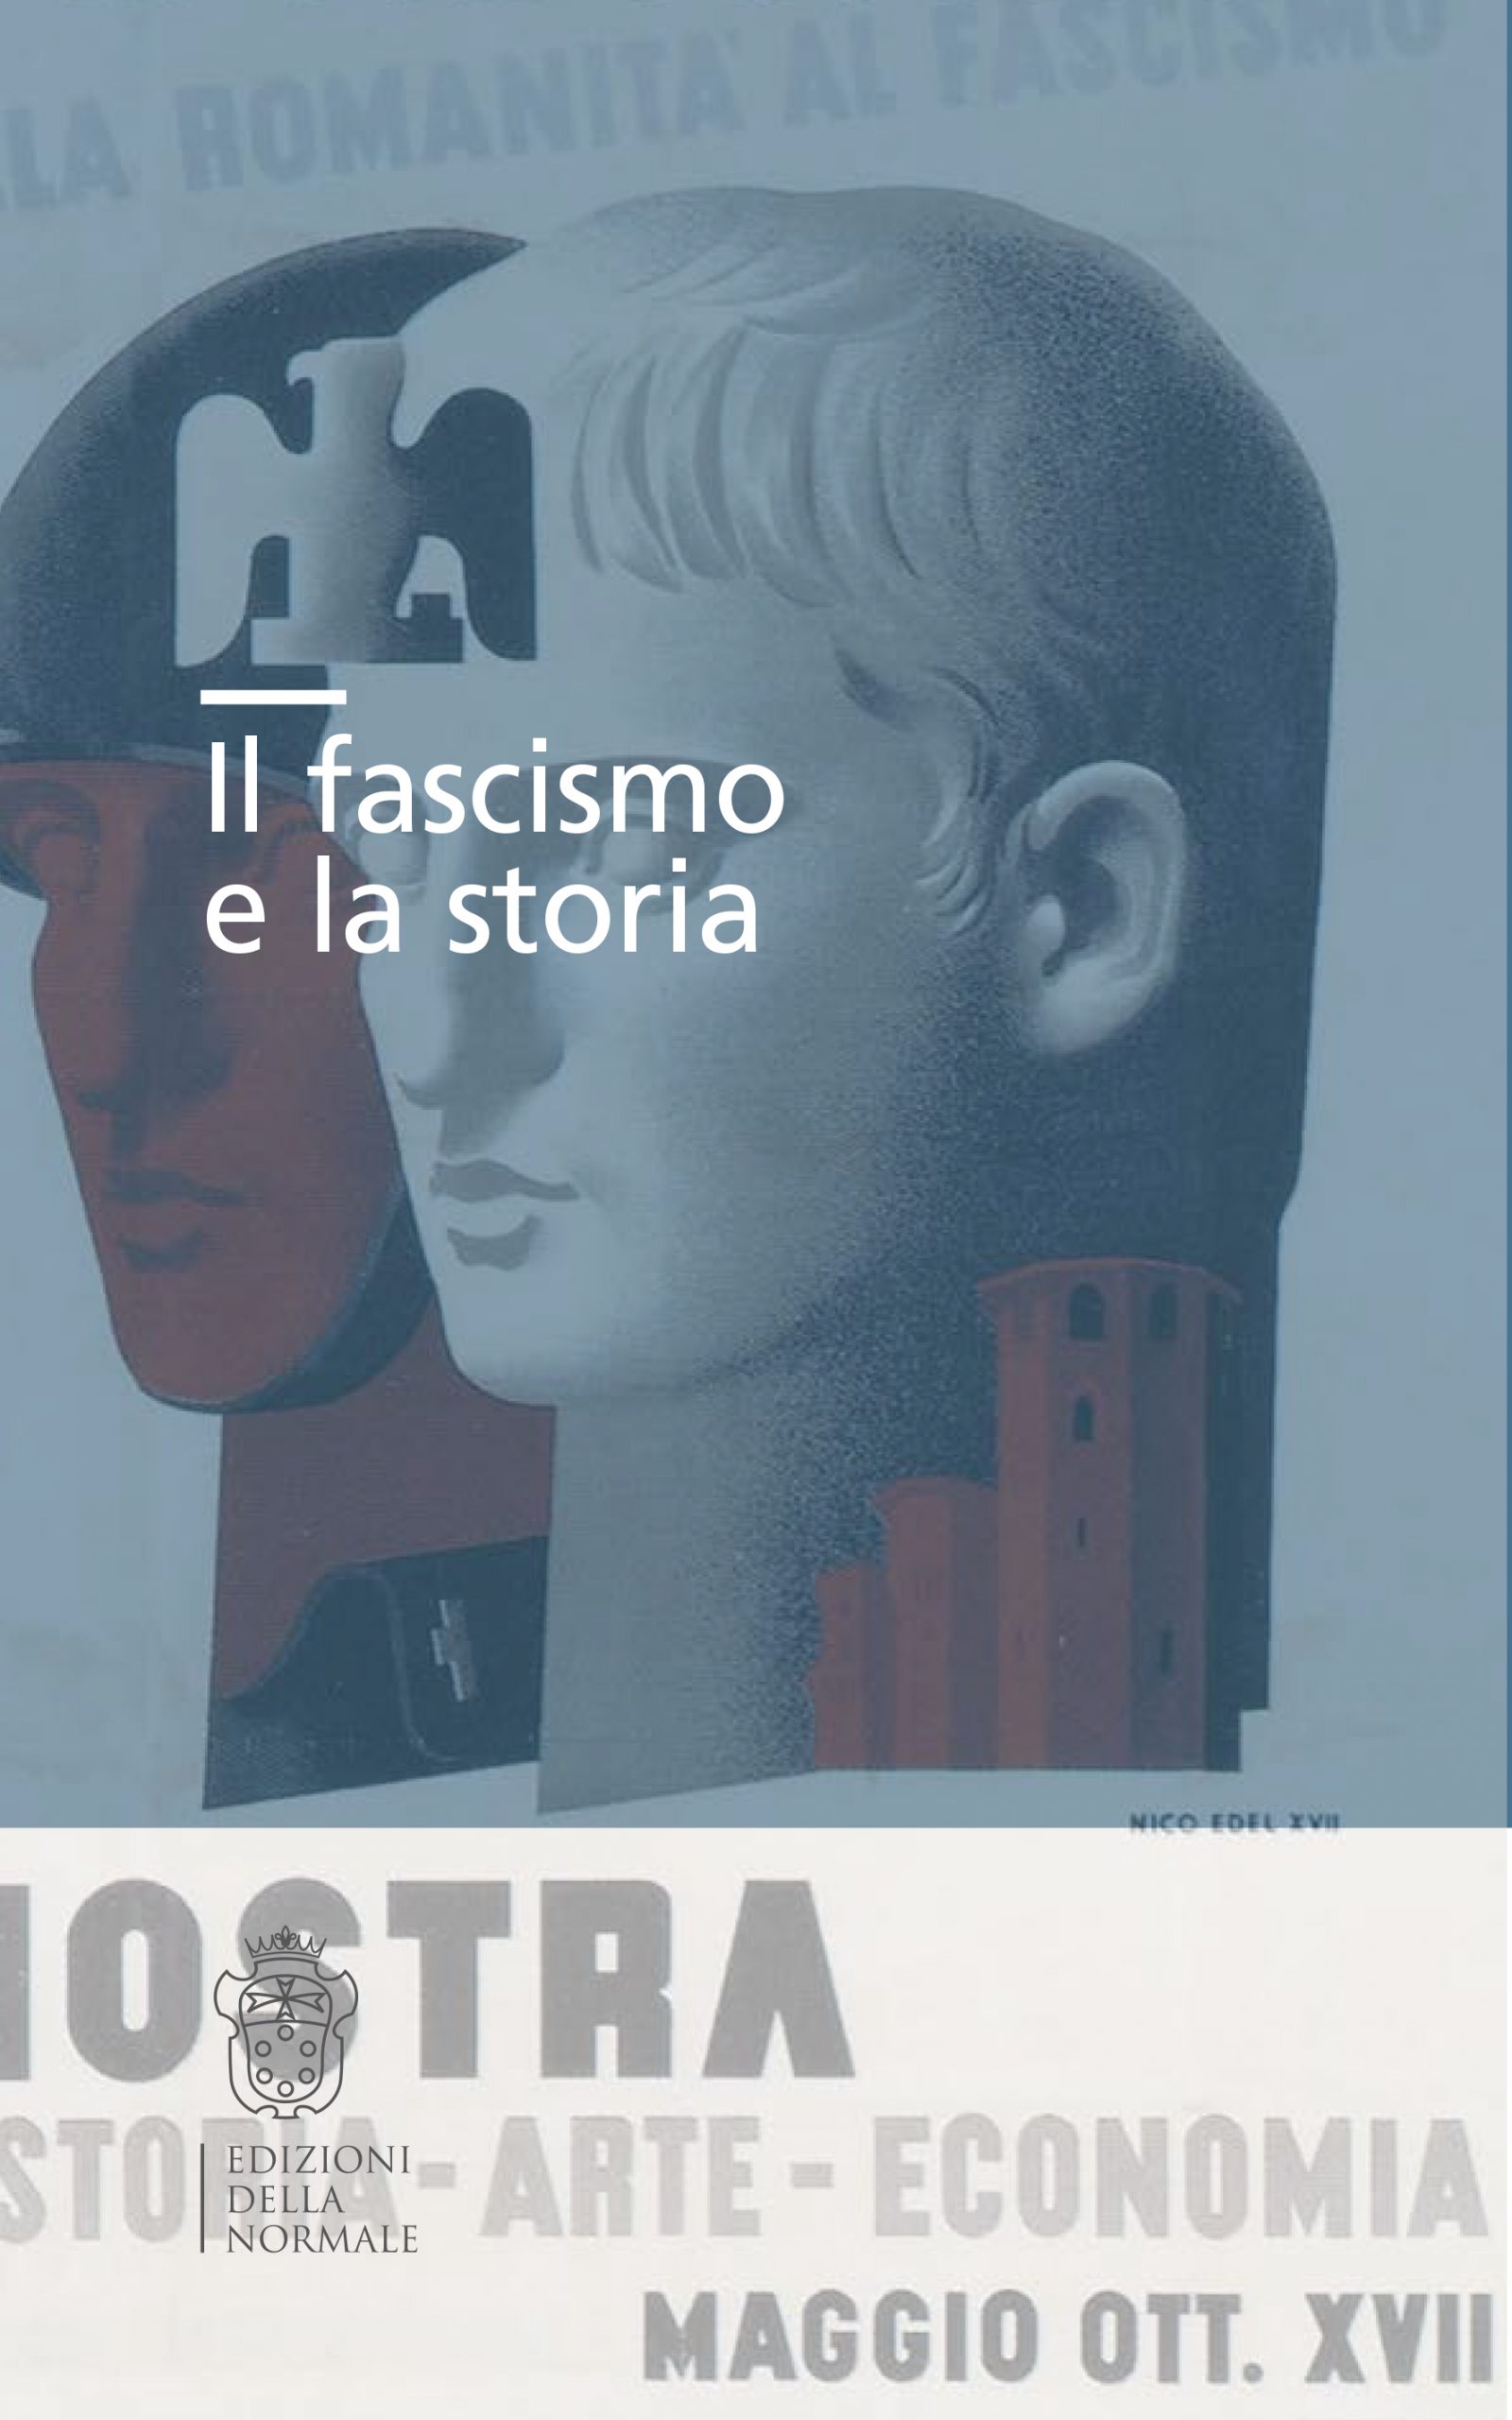 Il fascismo e la storia - Edizioni della Normale